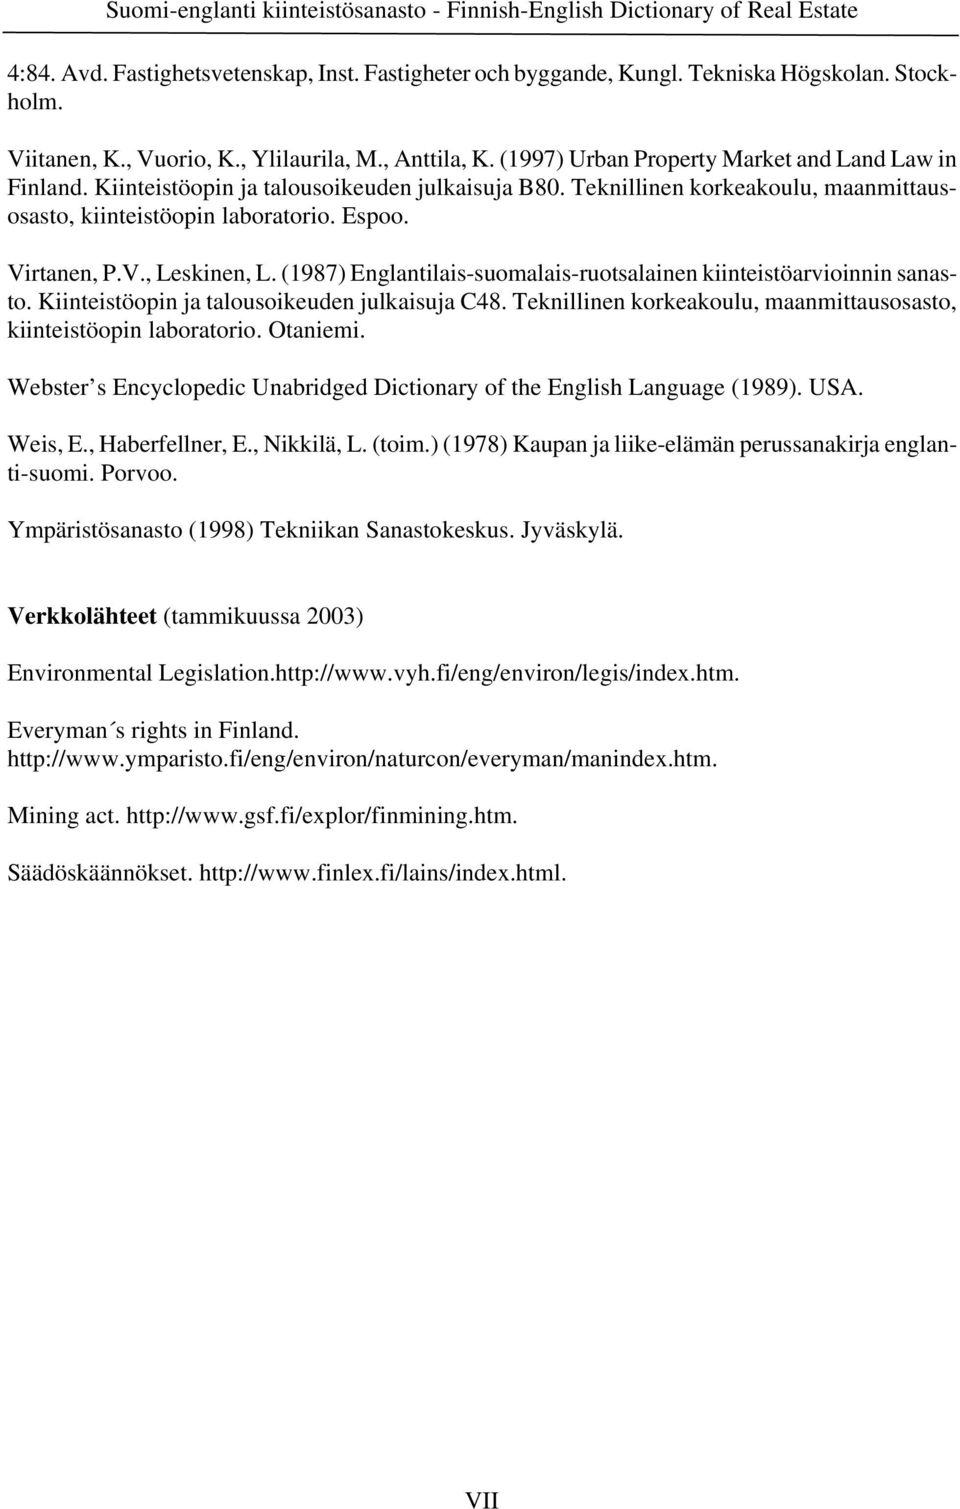 Teknillinen korkeakoulu, maanmittausosasto, kiinteistöopin laboratorio. Espoo. Virtanen, P.V., Leskinen, L. (1987) Englantilais-suomalais-ruotsalainen kiinteistöarvioinnin sanasto.